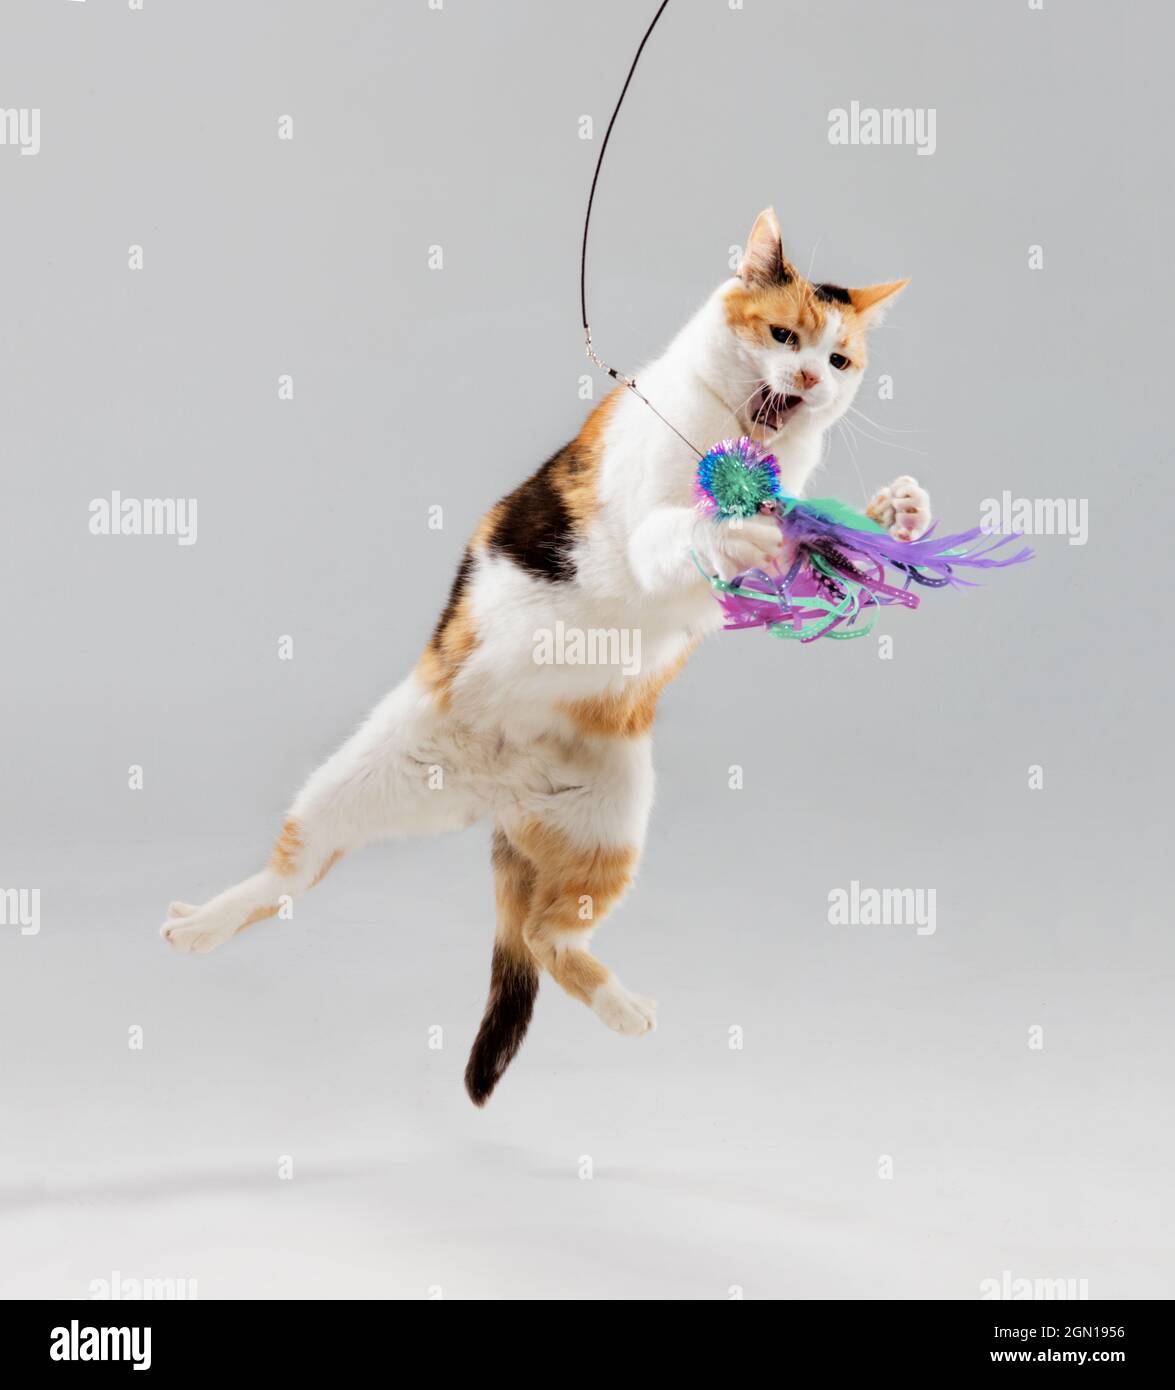 Ganzkörperaufnahme einer Calico-Katze im Studio, die in der Luft springt und ein farbenfrohes Spielzeug angreift. Stockfoto